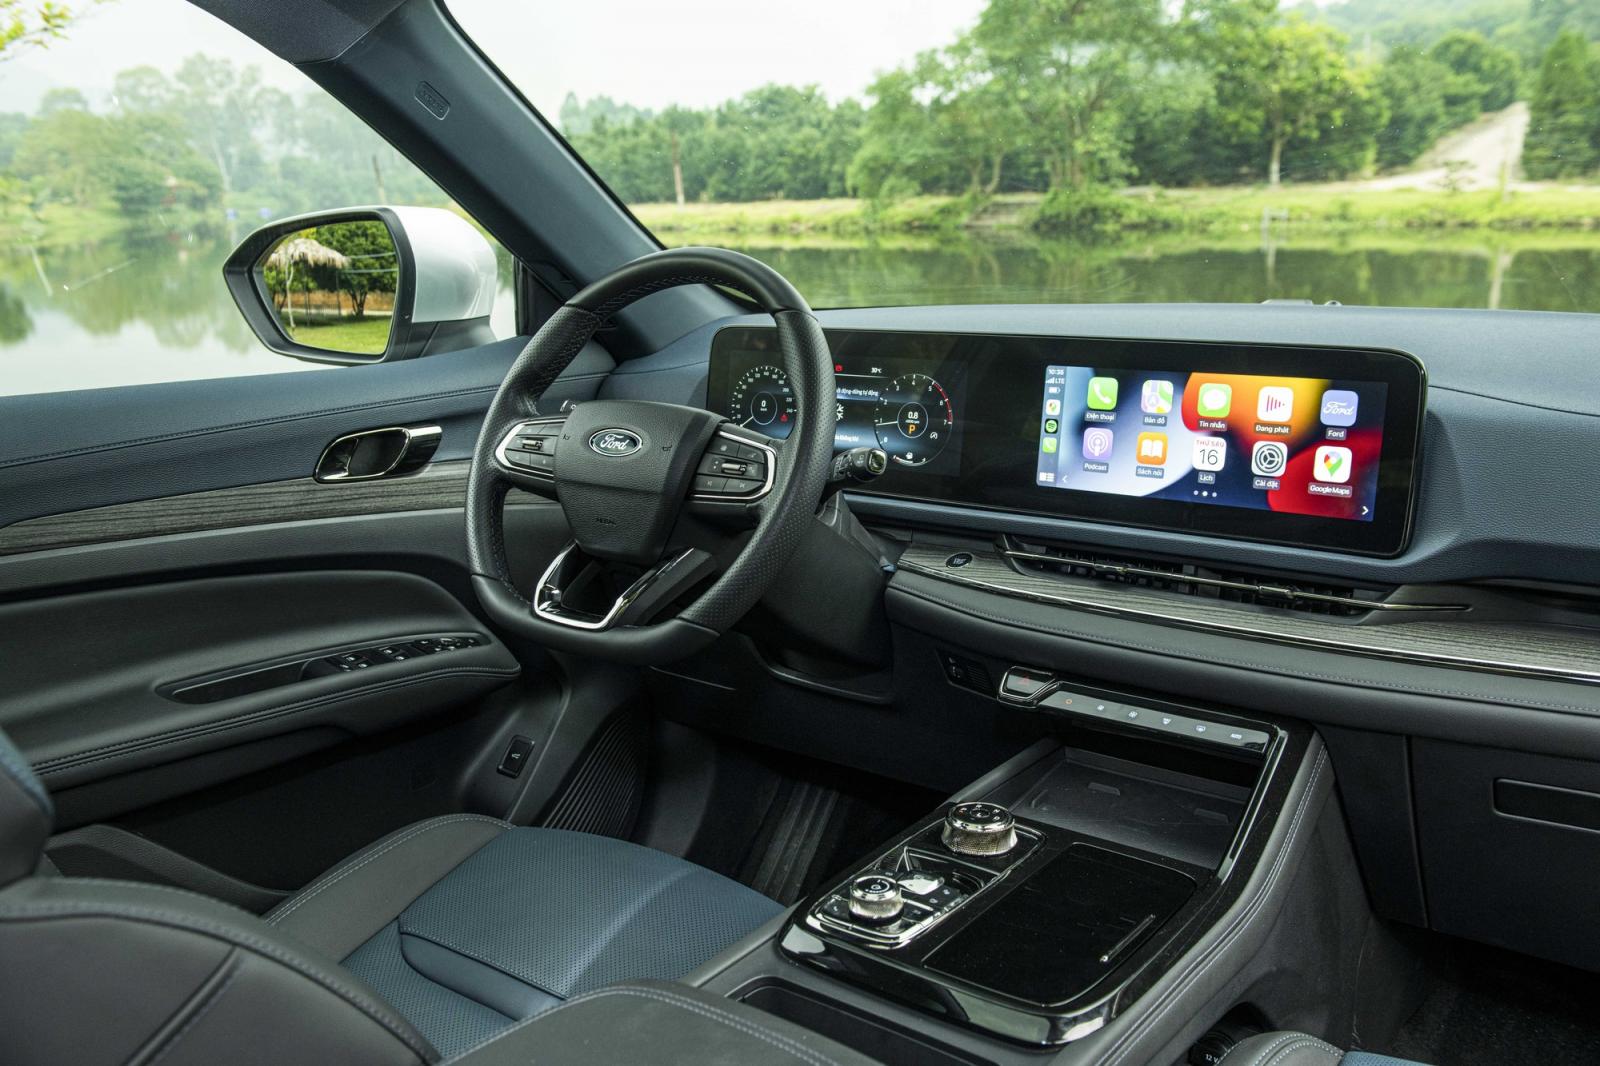 Khoang nội thất Ford Territory 2022 nổi bật với cặp màn hình kép 12,3 inch.